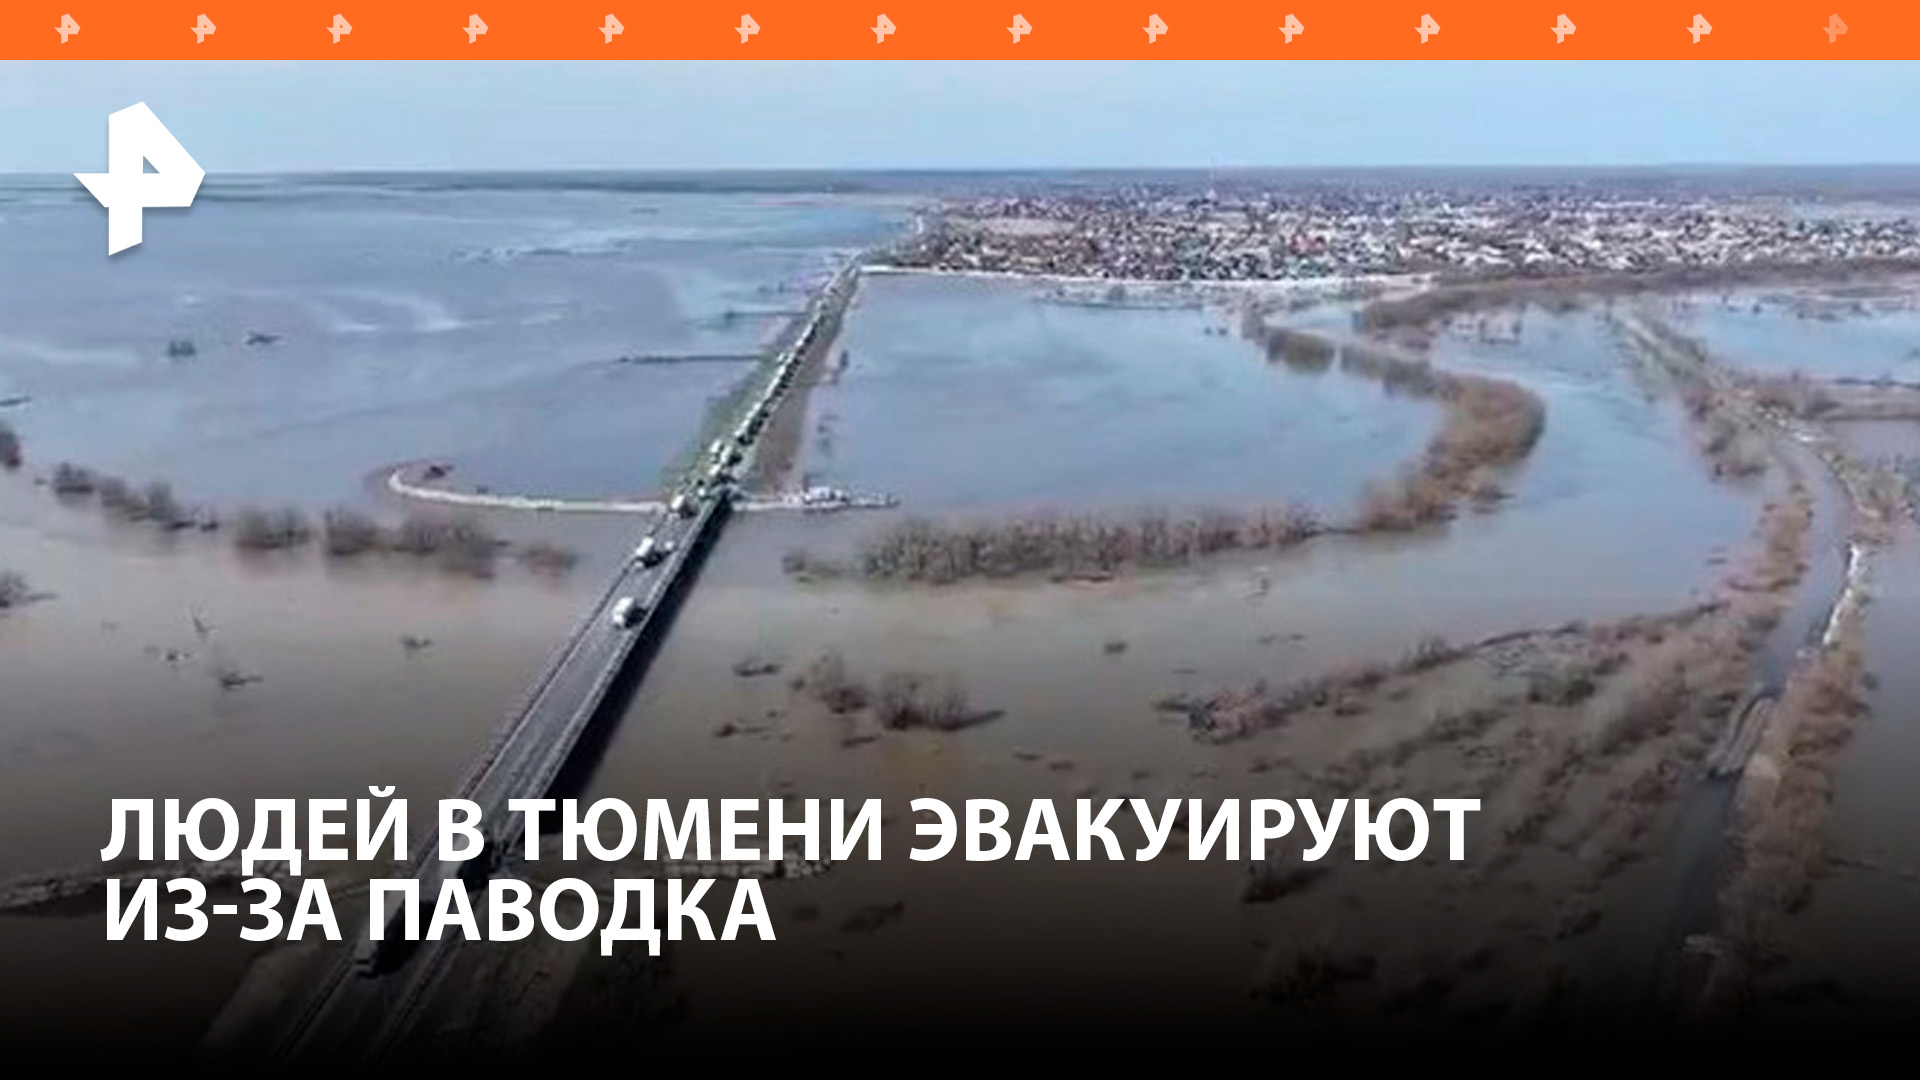 Борьба с паводком в Тюменской области: в пяти селах объявлена эвакуация / РЕН Новости